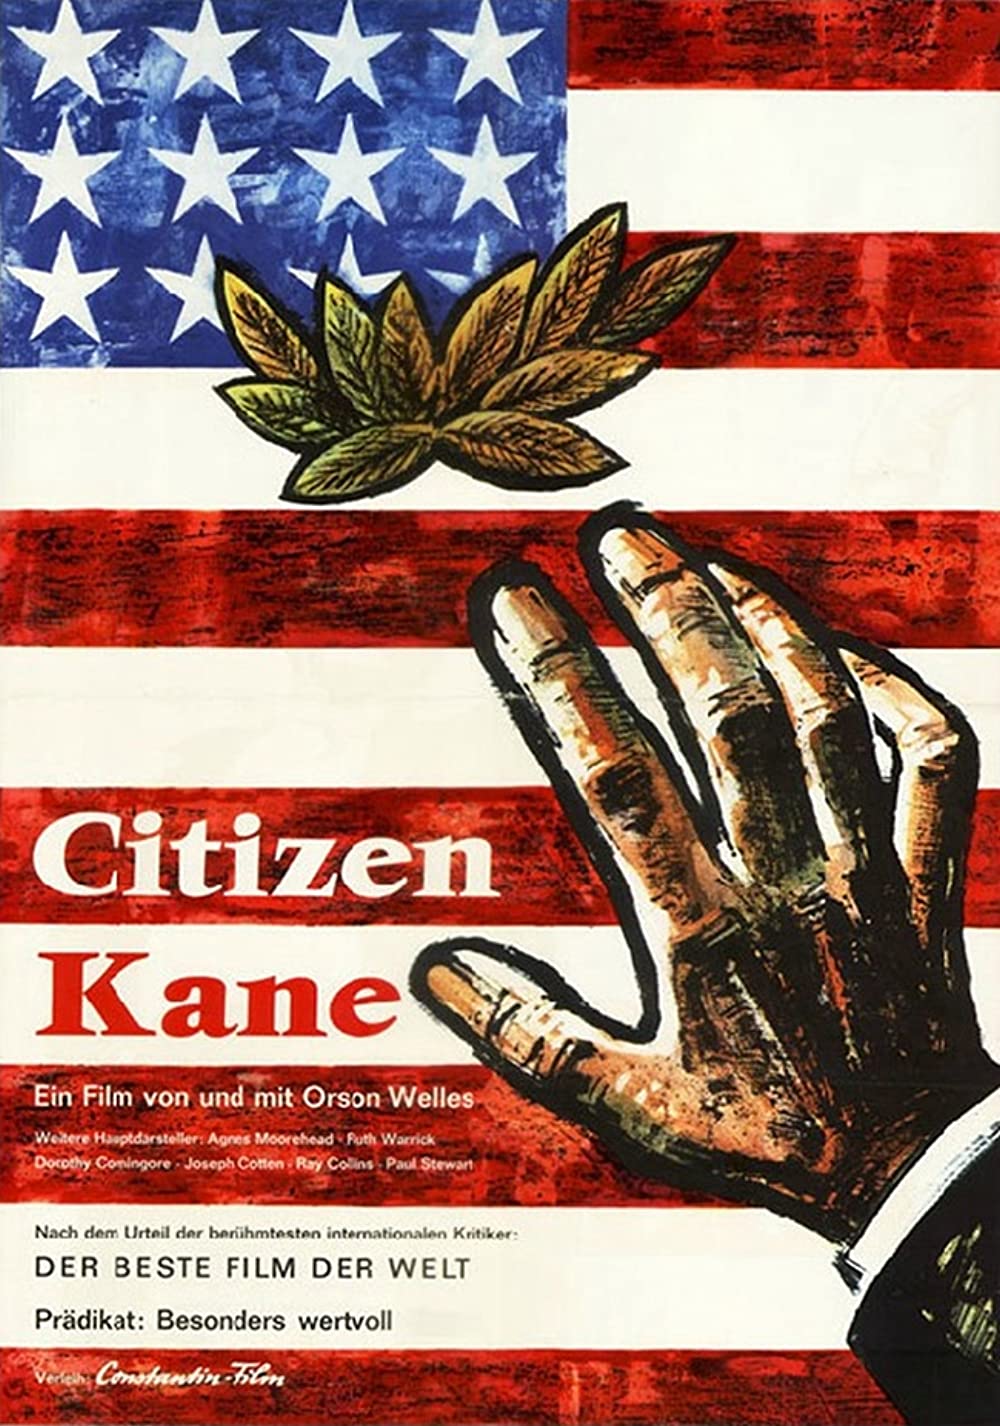 Filmbeschreibung zu Citizen Kane (OV)